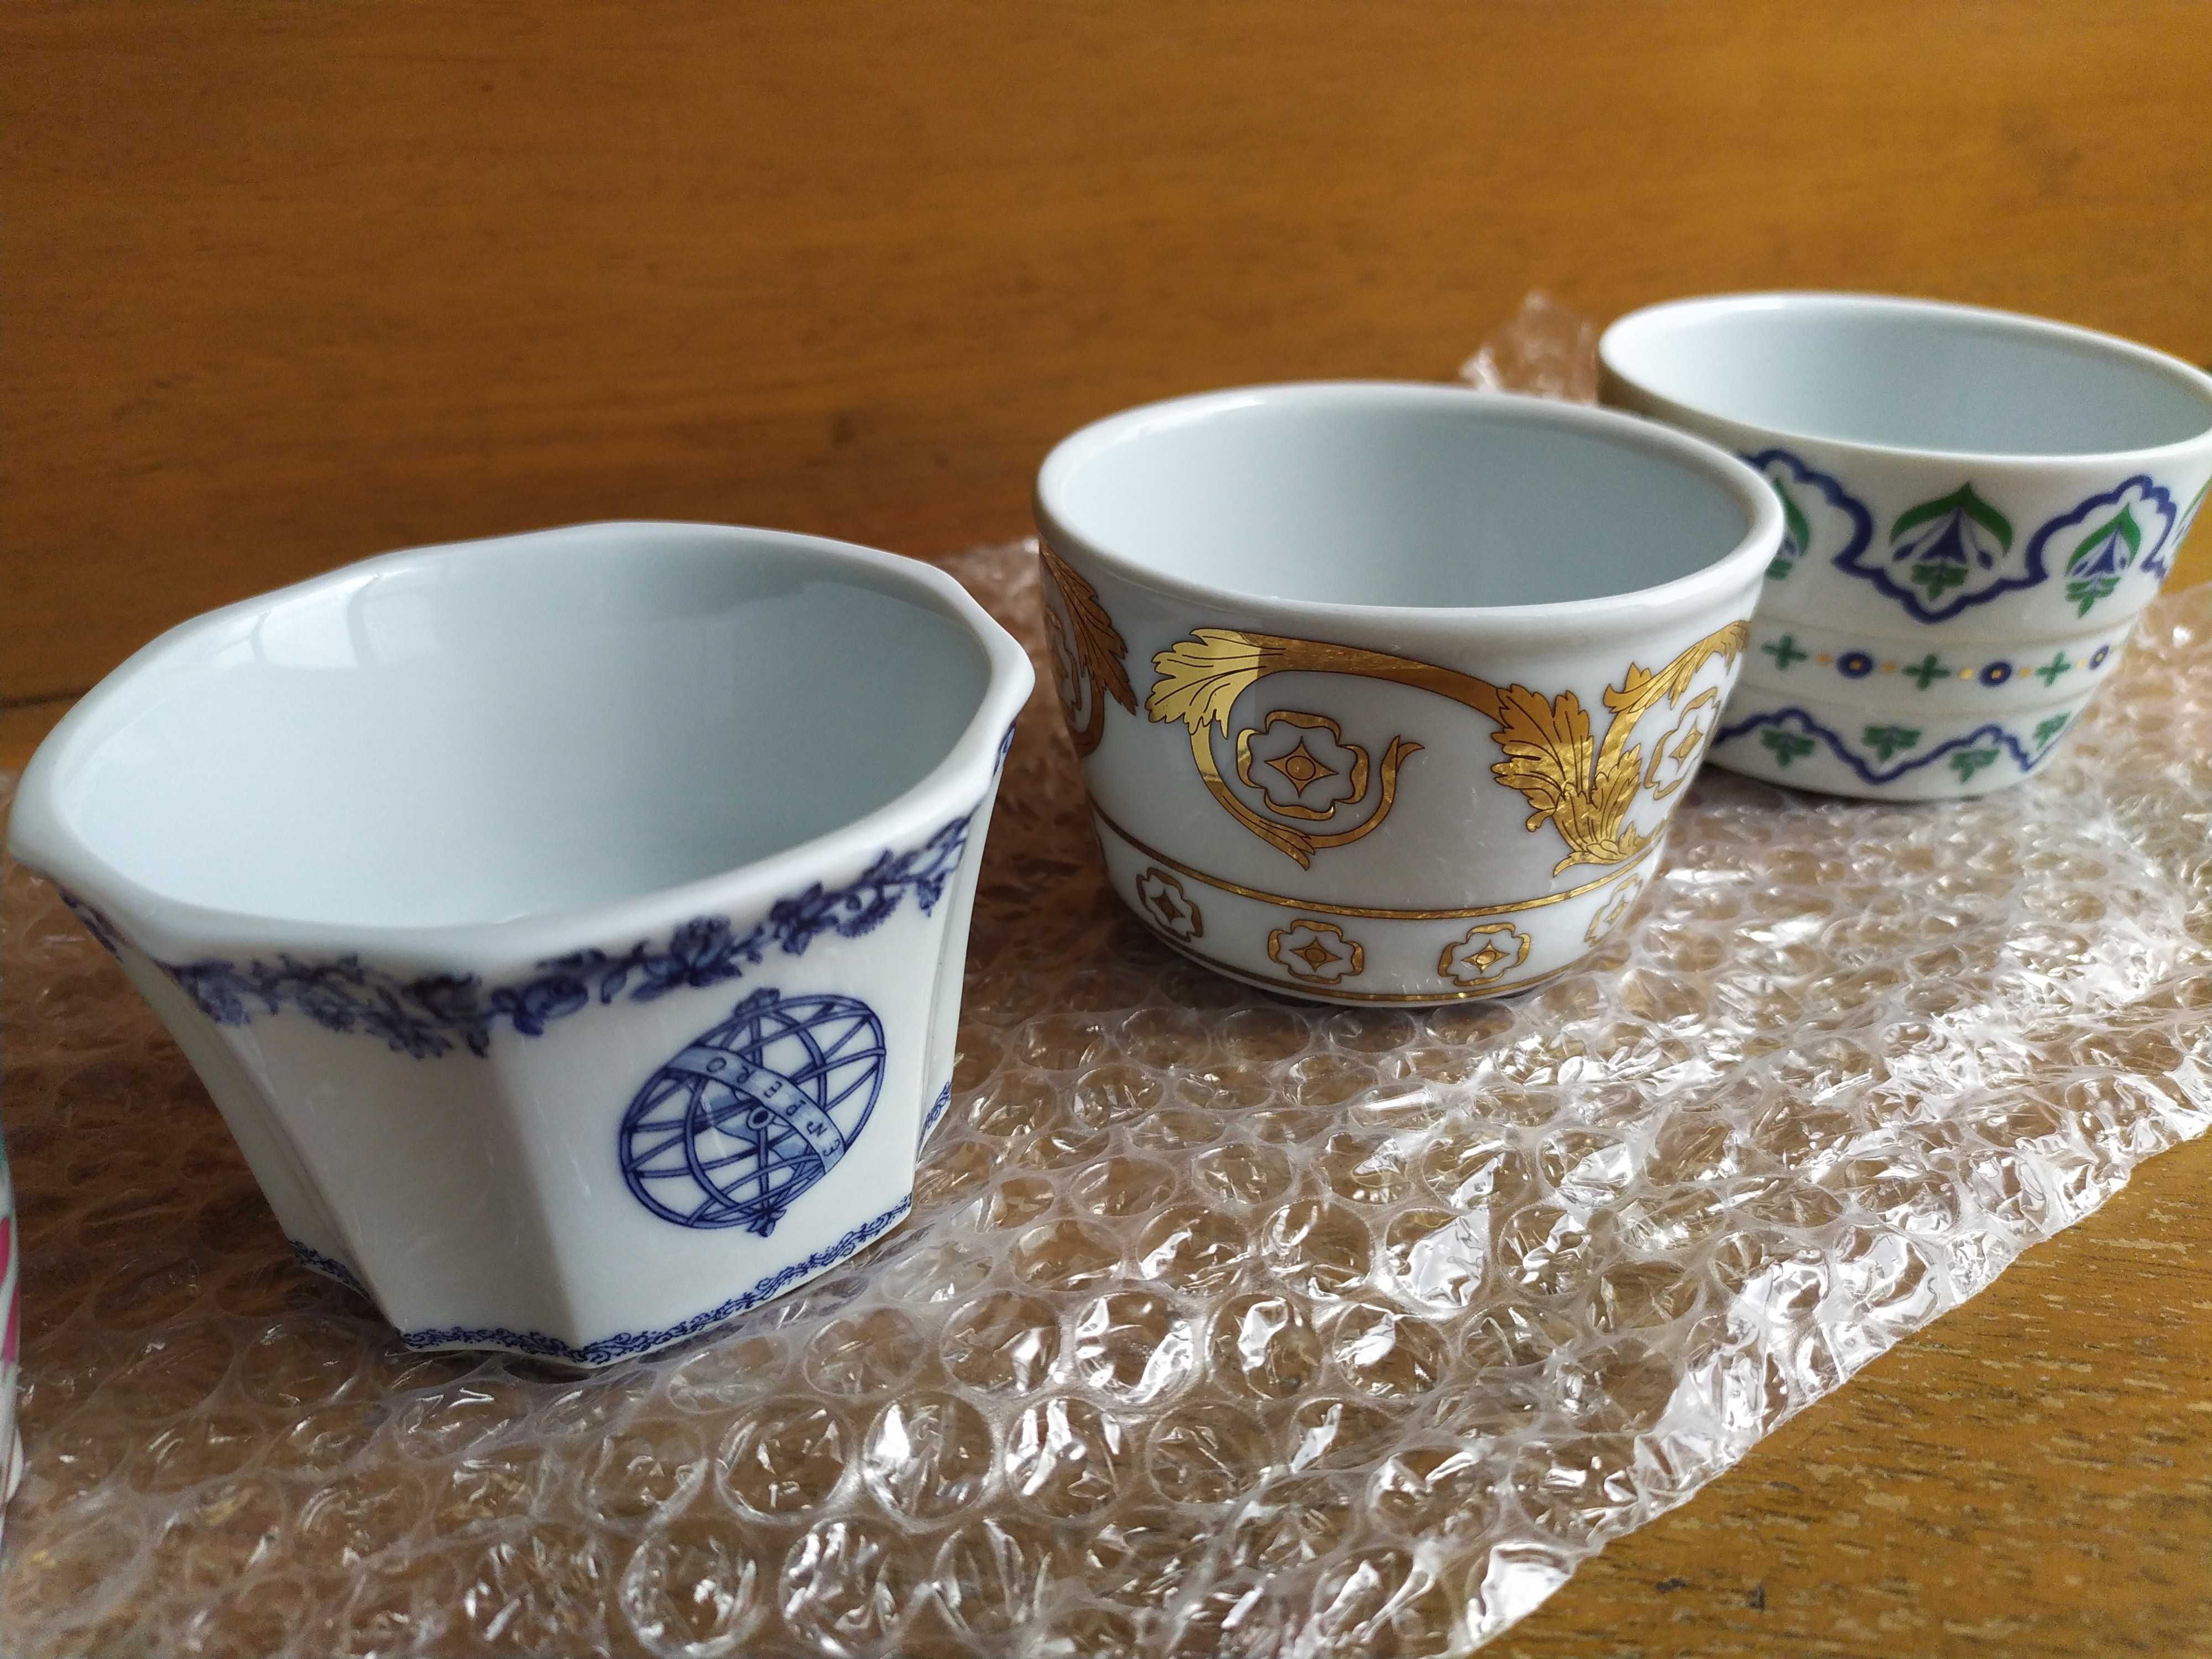 12 peças - Saleiros de Estilo - Conventual Porcelanas